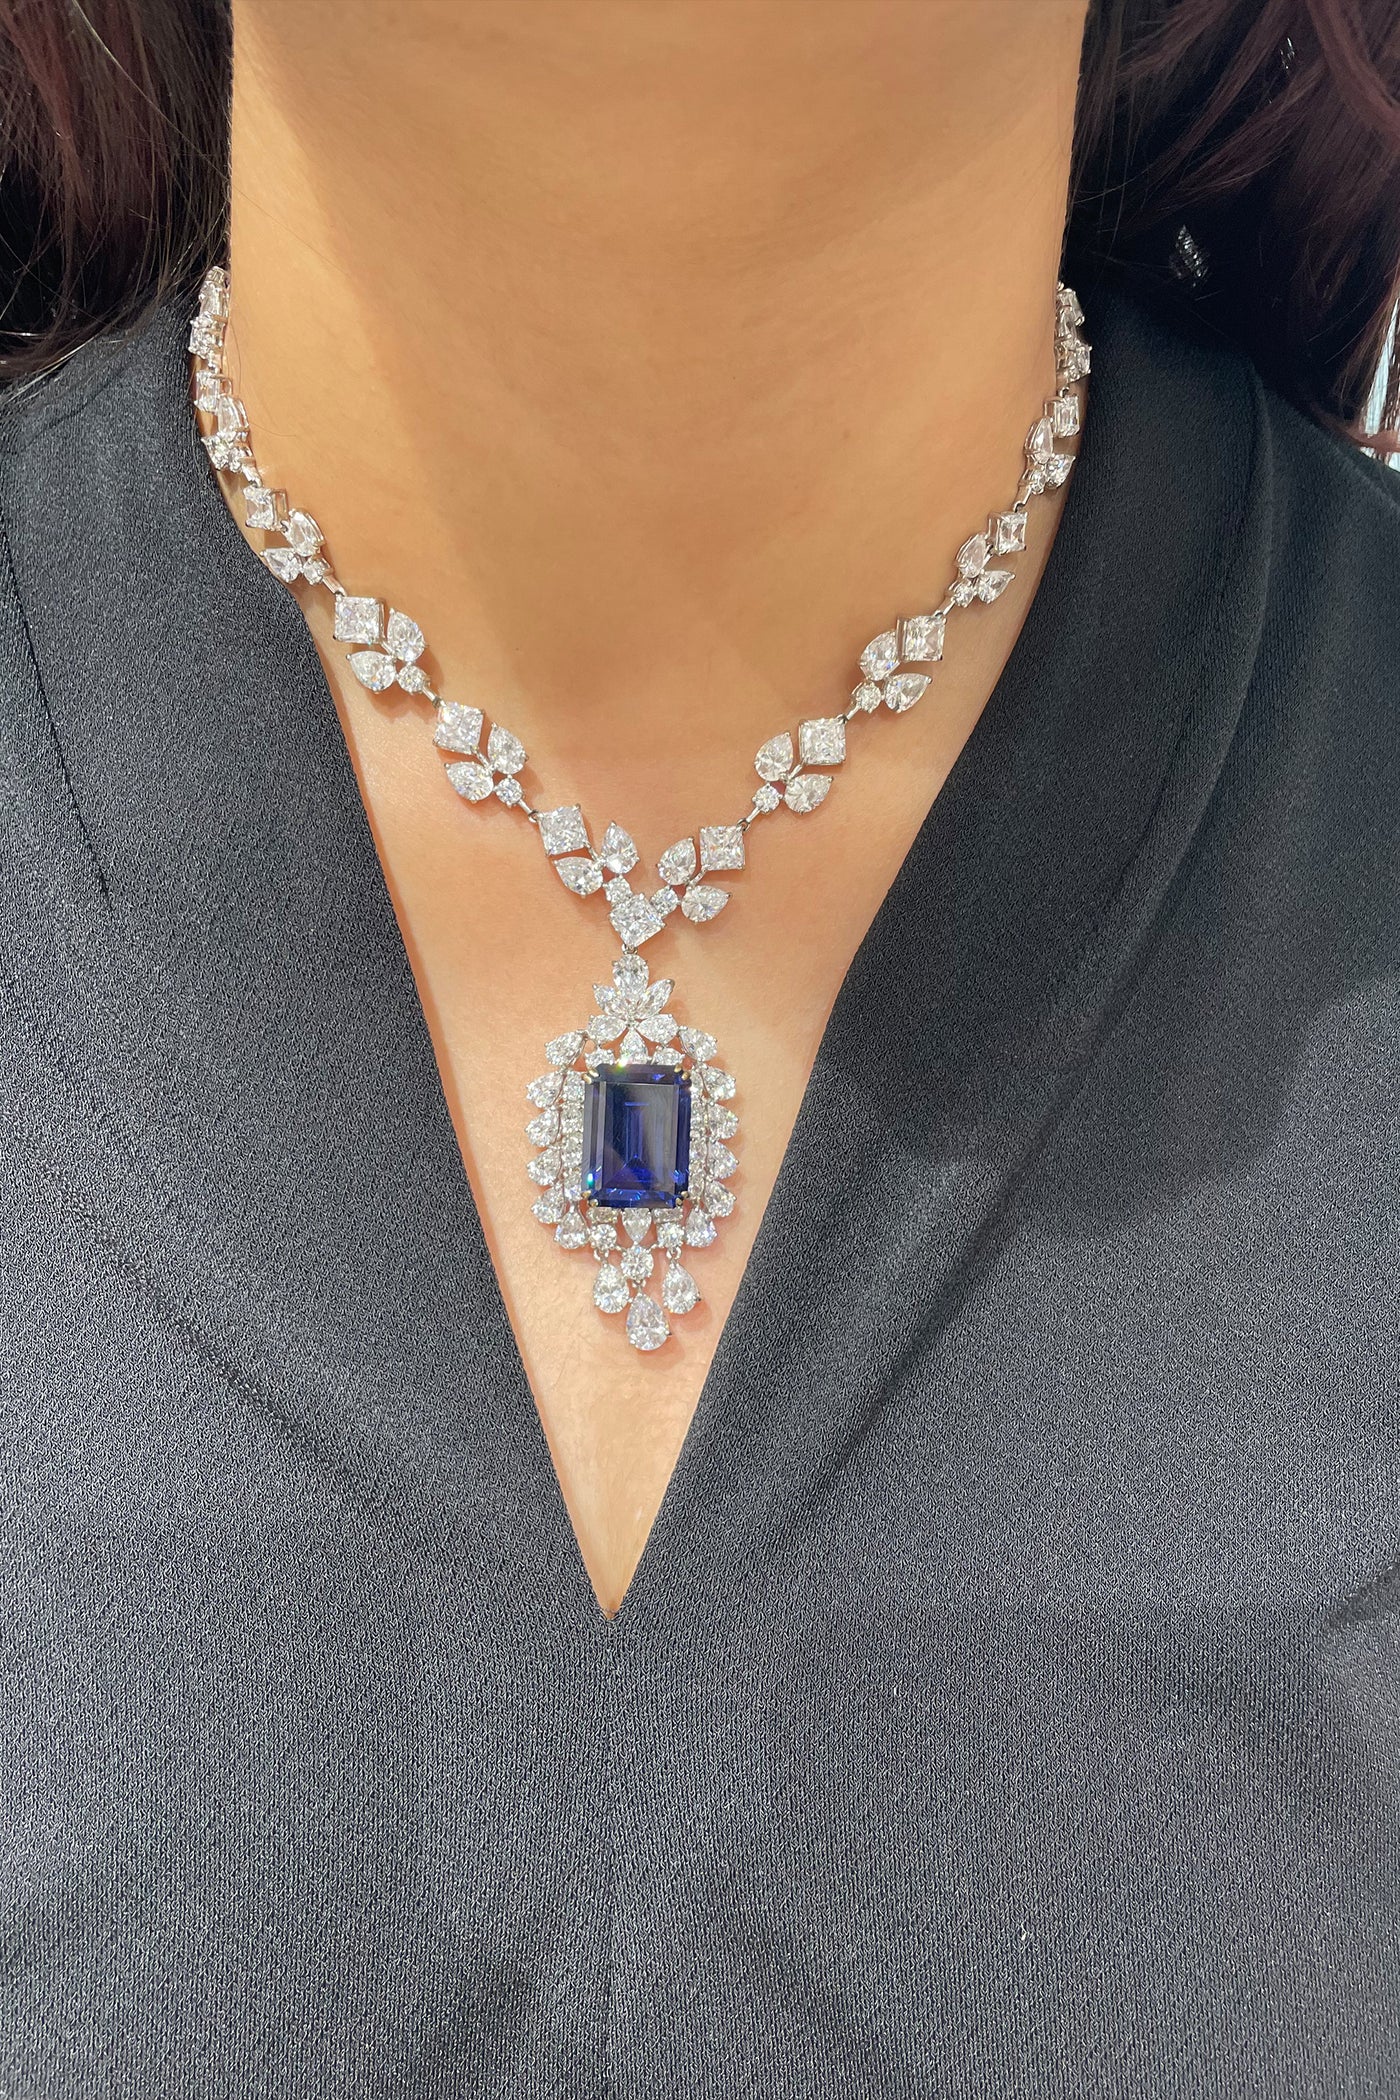 Tesoro Royalty With This Stunning Cocktail Swarovski Necklace indian designer wear online shopping melange singapore